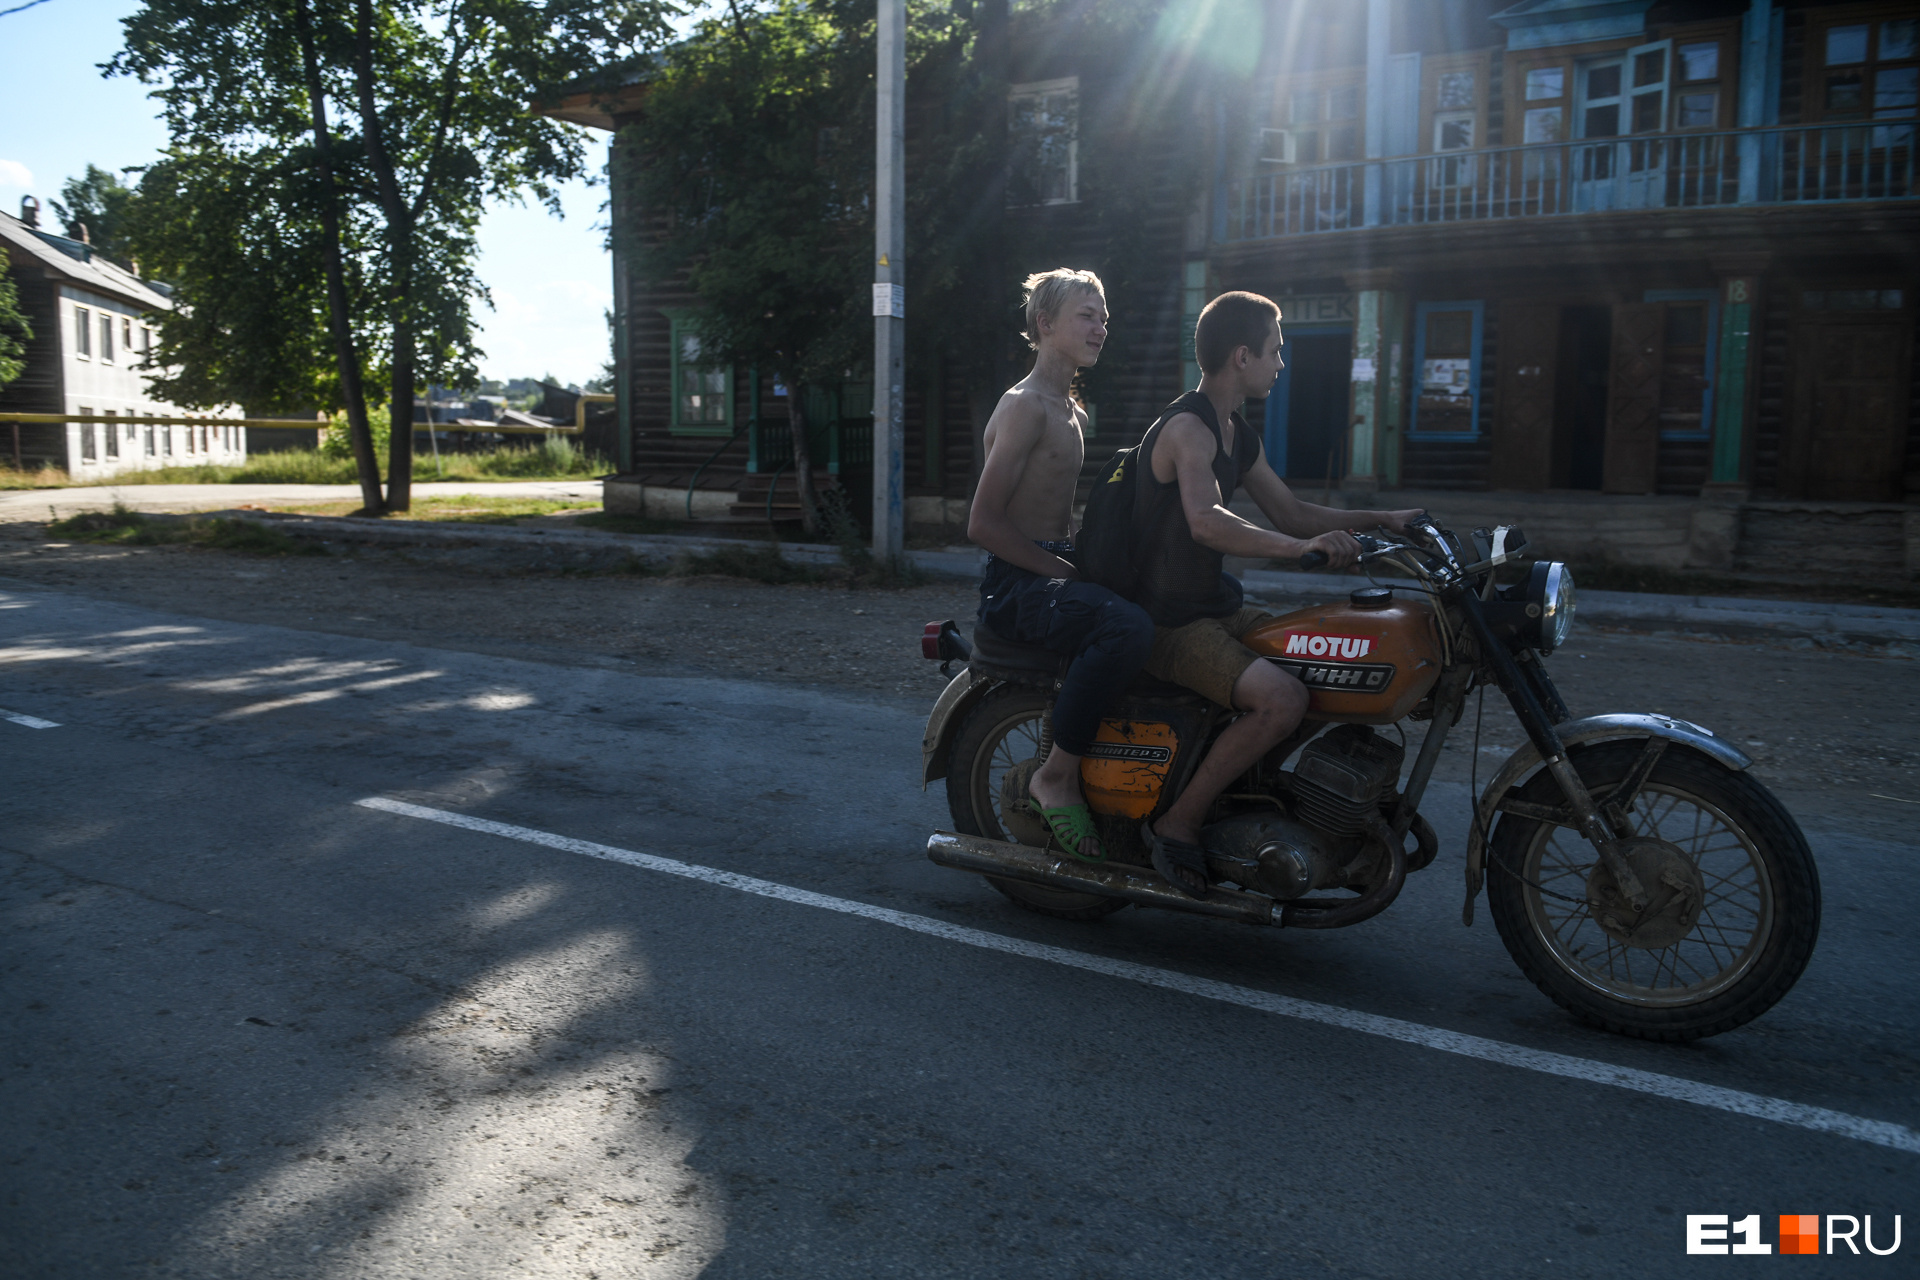 В поселке своя атмосфера, пацаны на мотоциклах гоняют без шлемов